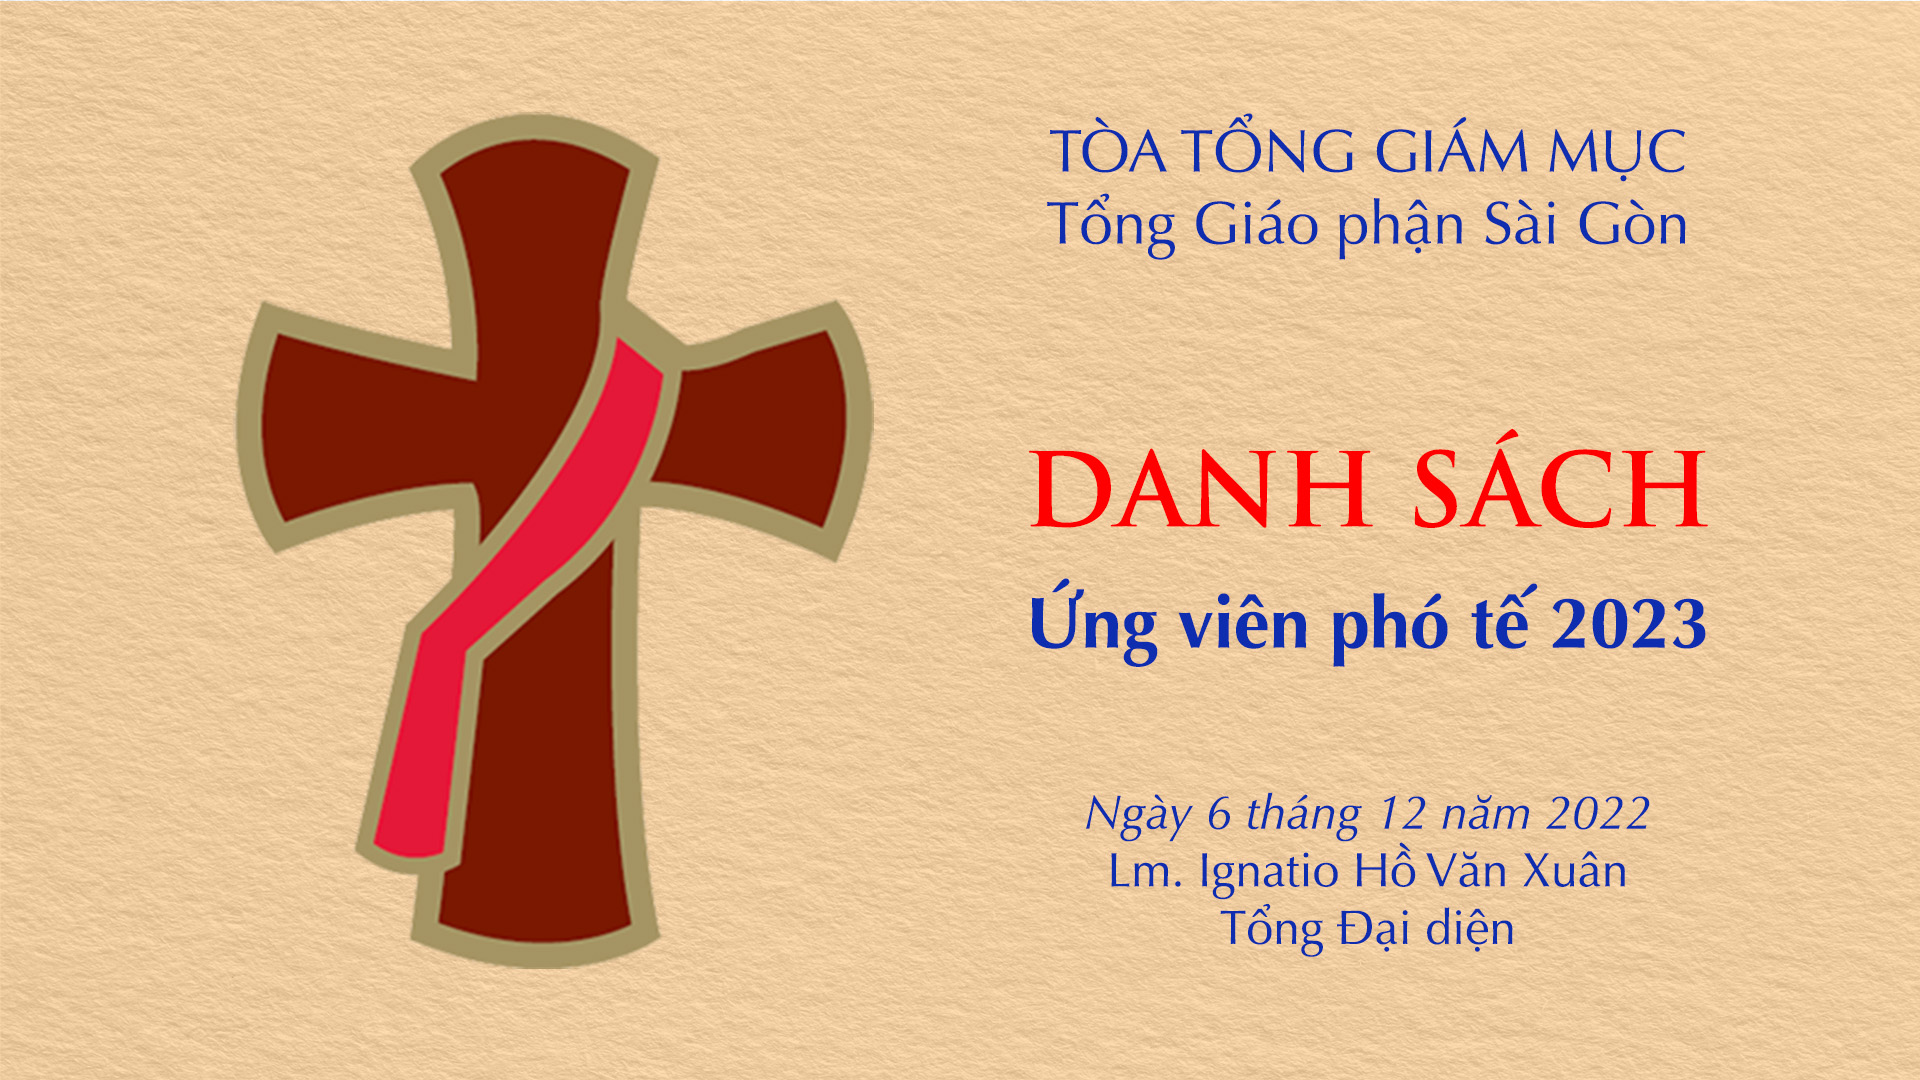 Tòa Tổng Giám mục Sài Gòn: Ứng viên phó tế năm 2023